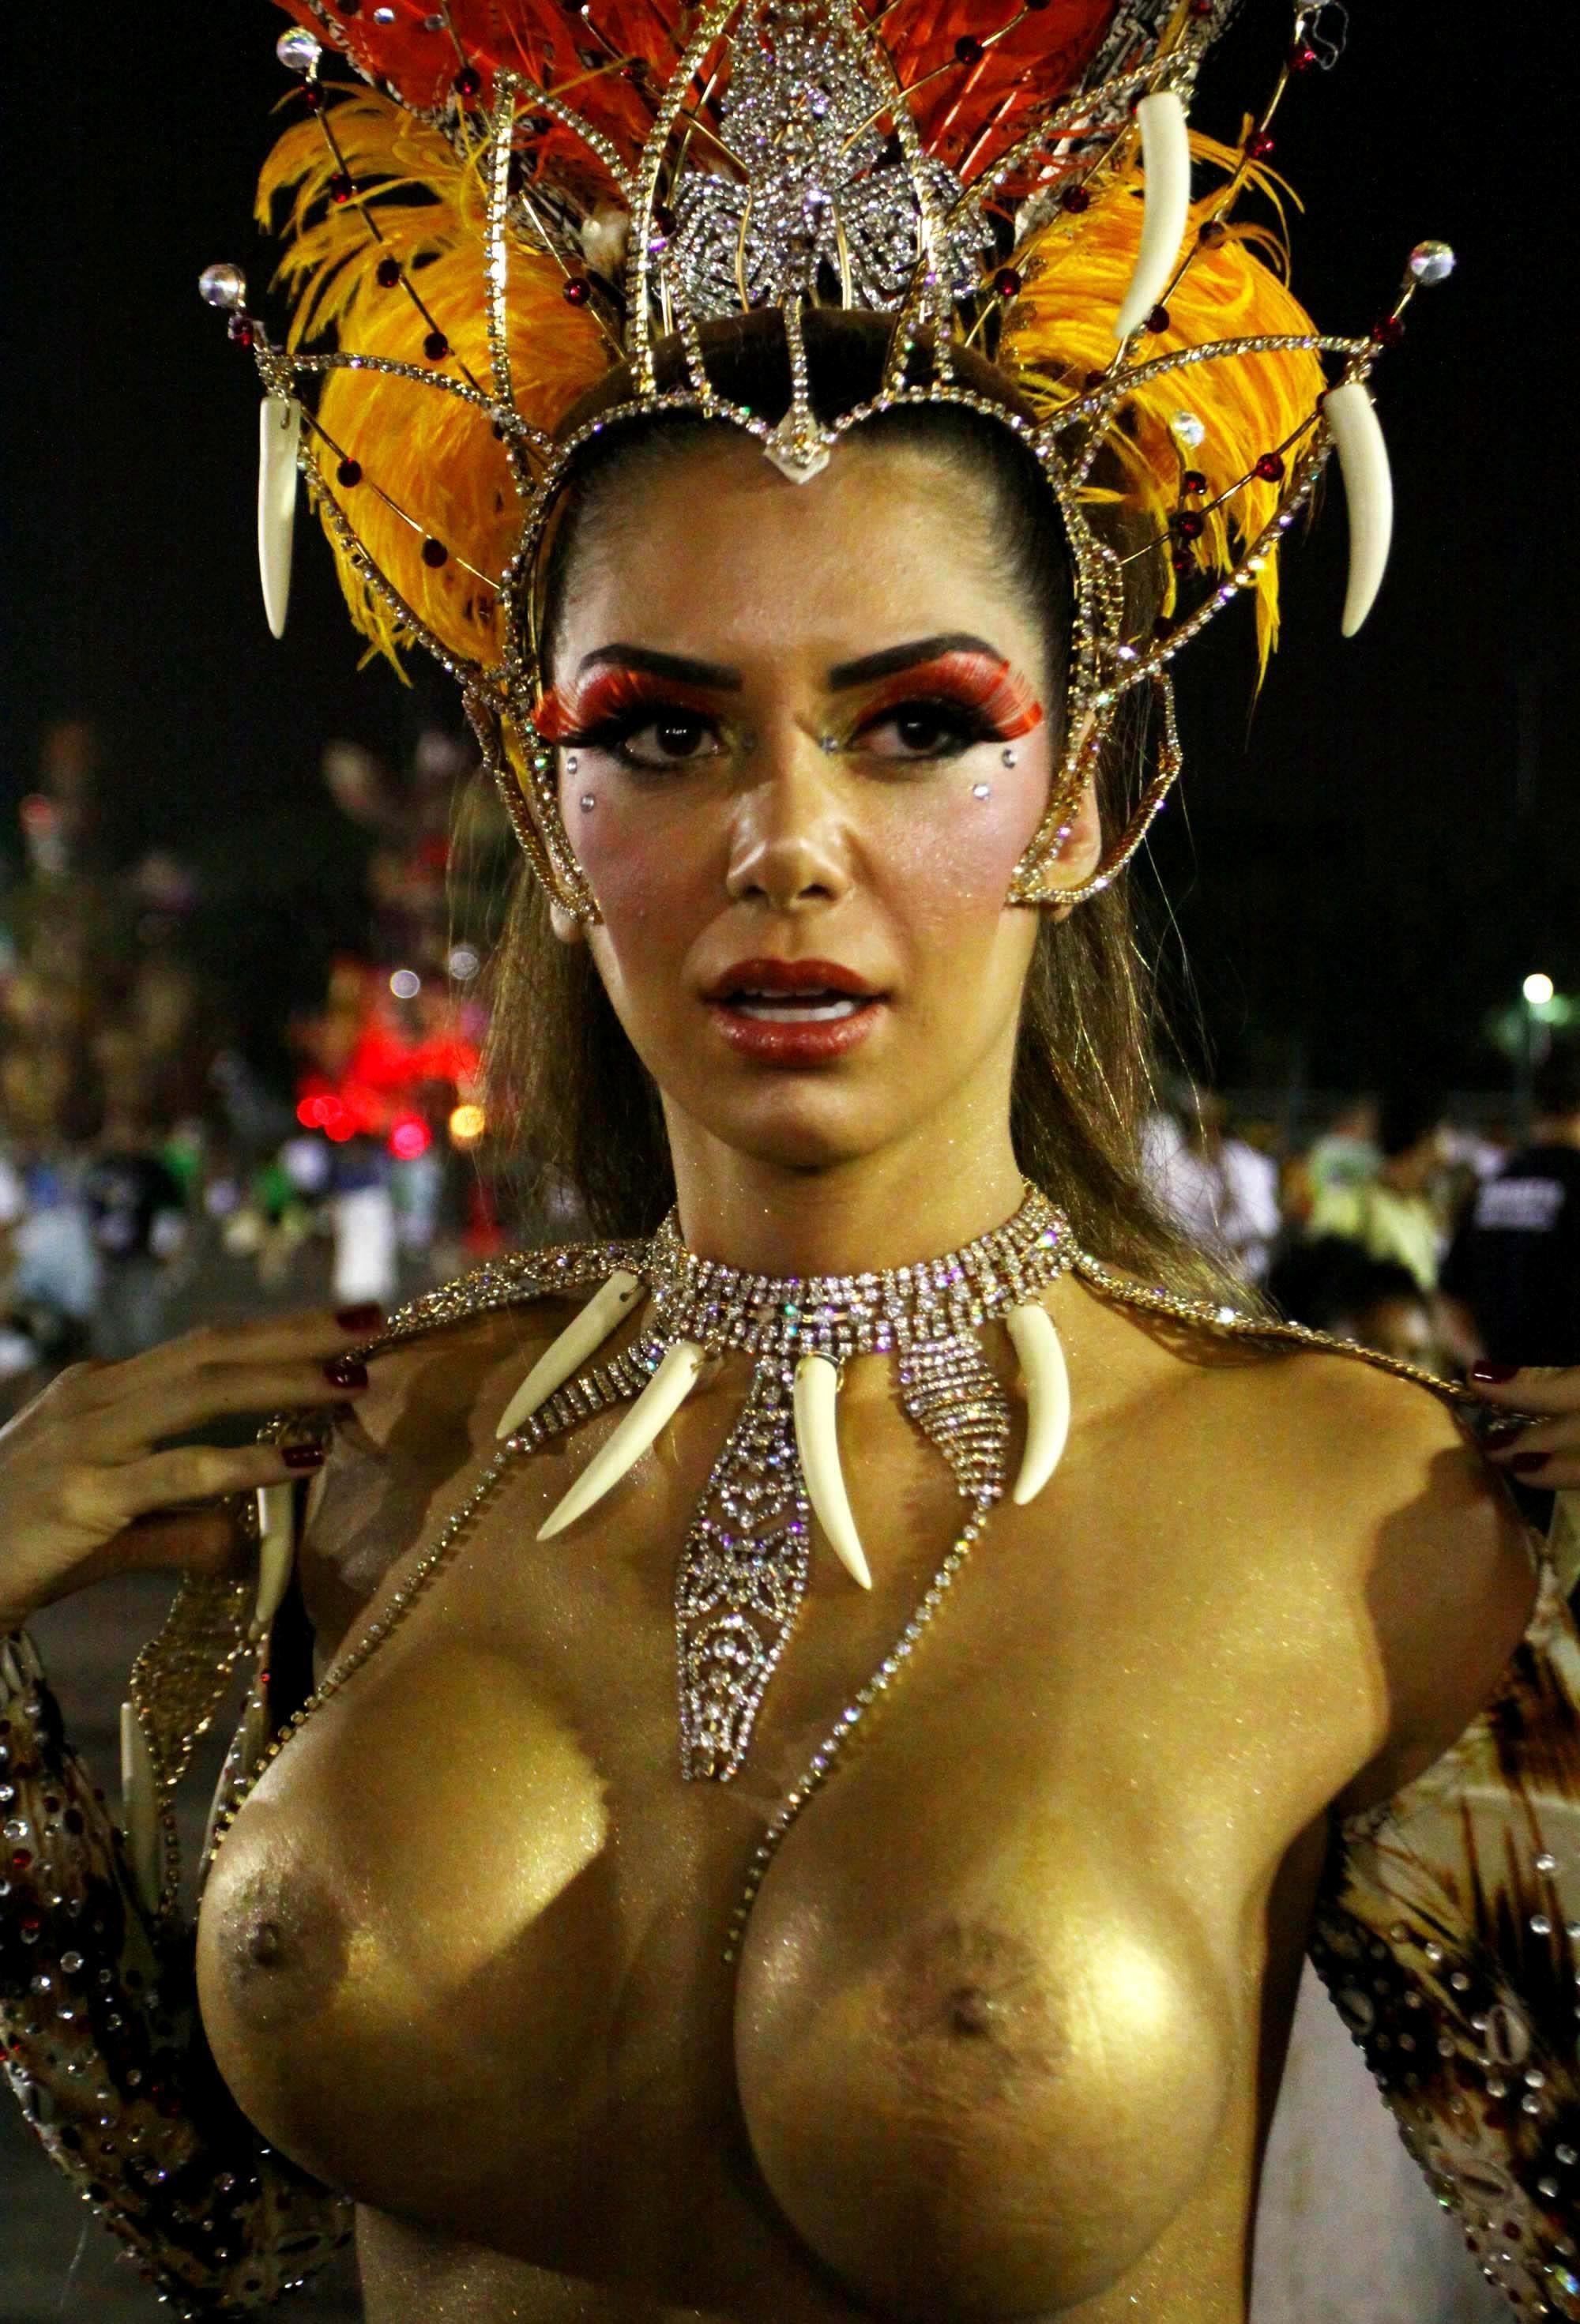 Порно видео бразильский карнавал смотреть онлайн бесплатно